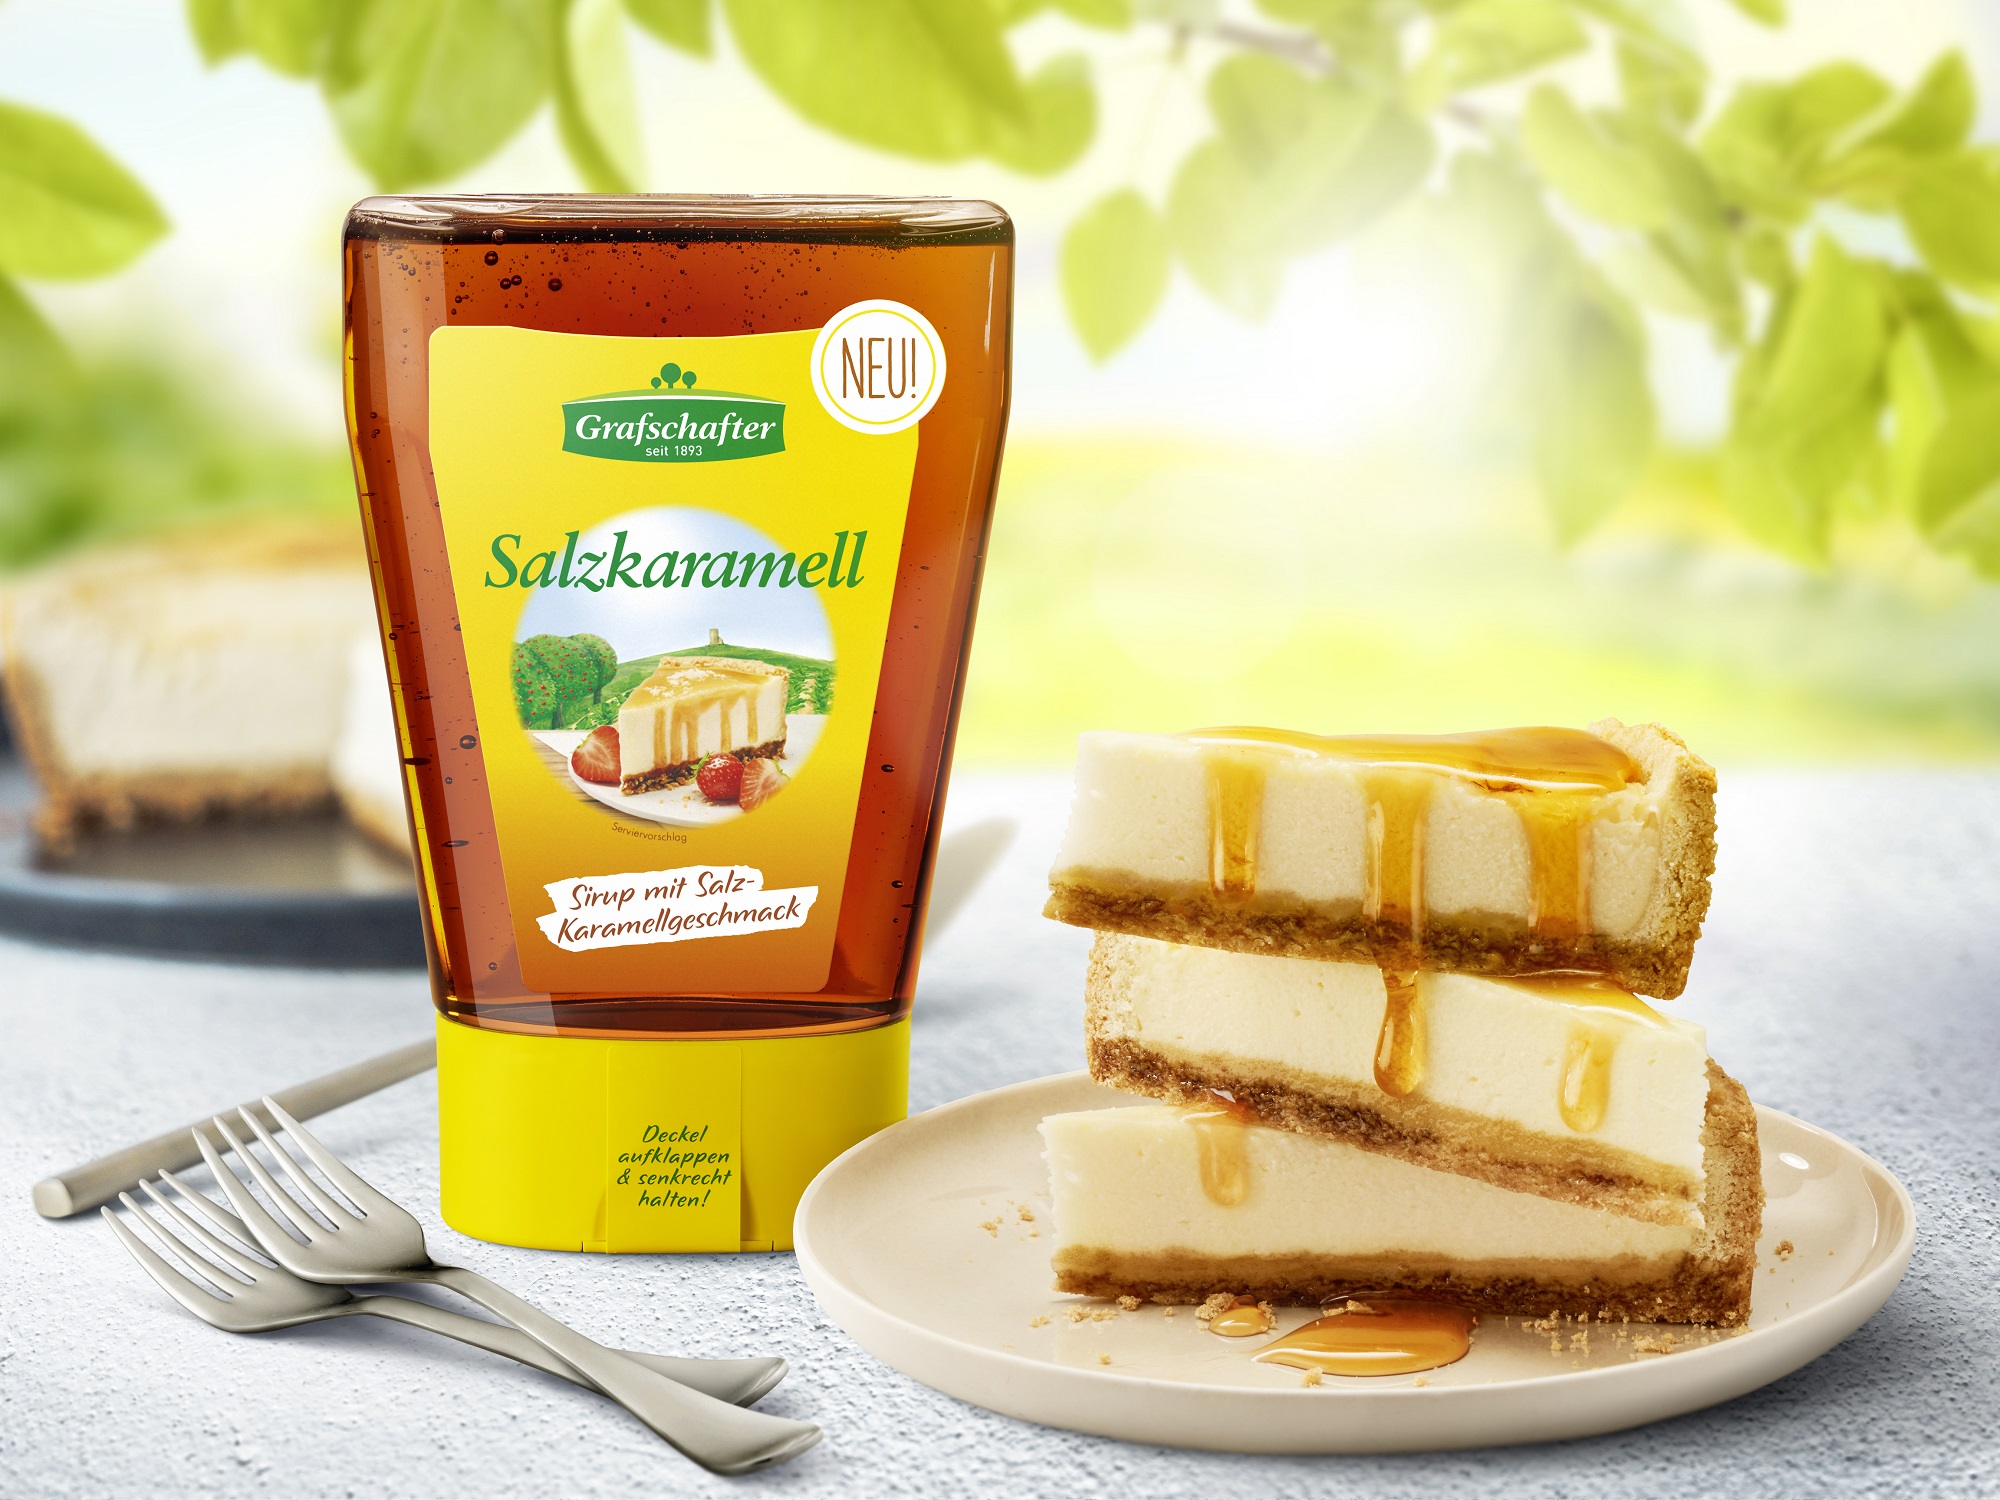 American Cheesecake verfeinert mit dem neuen Salzkaramell-Sirup der Grafschafter Krautfabrik